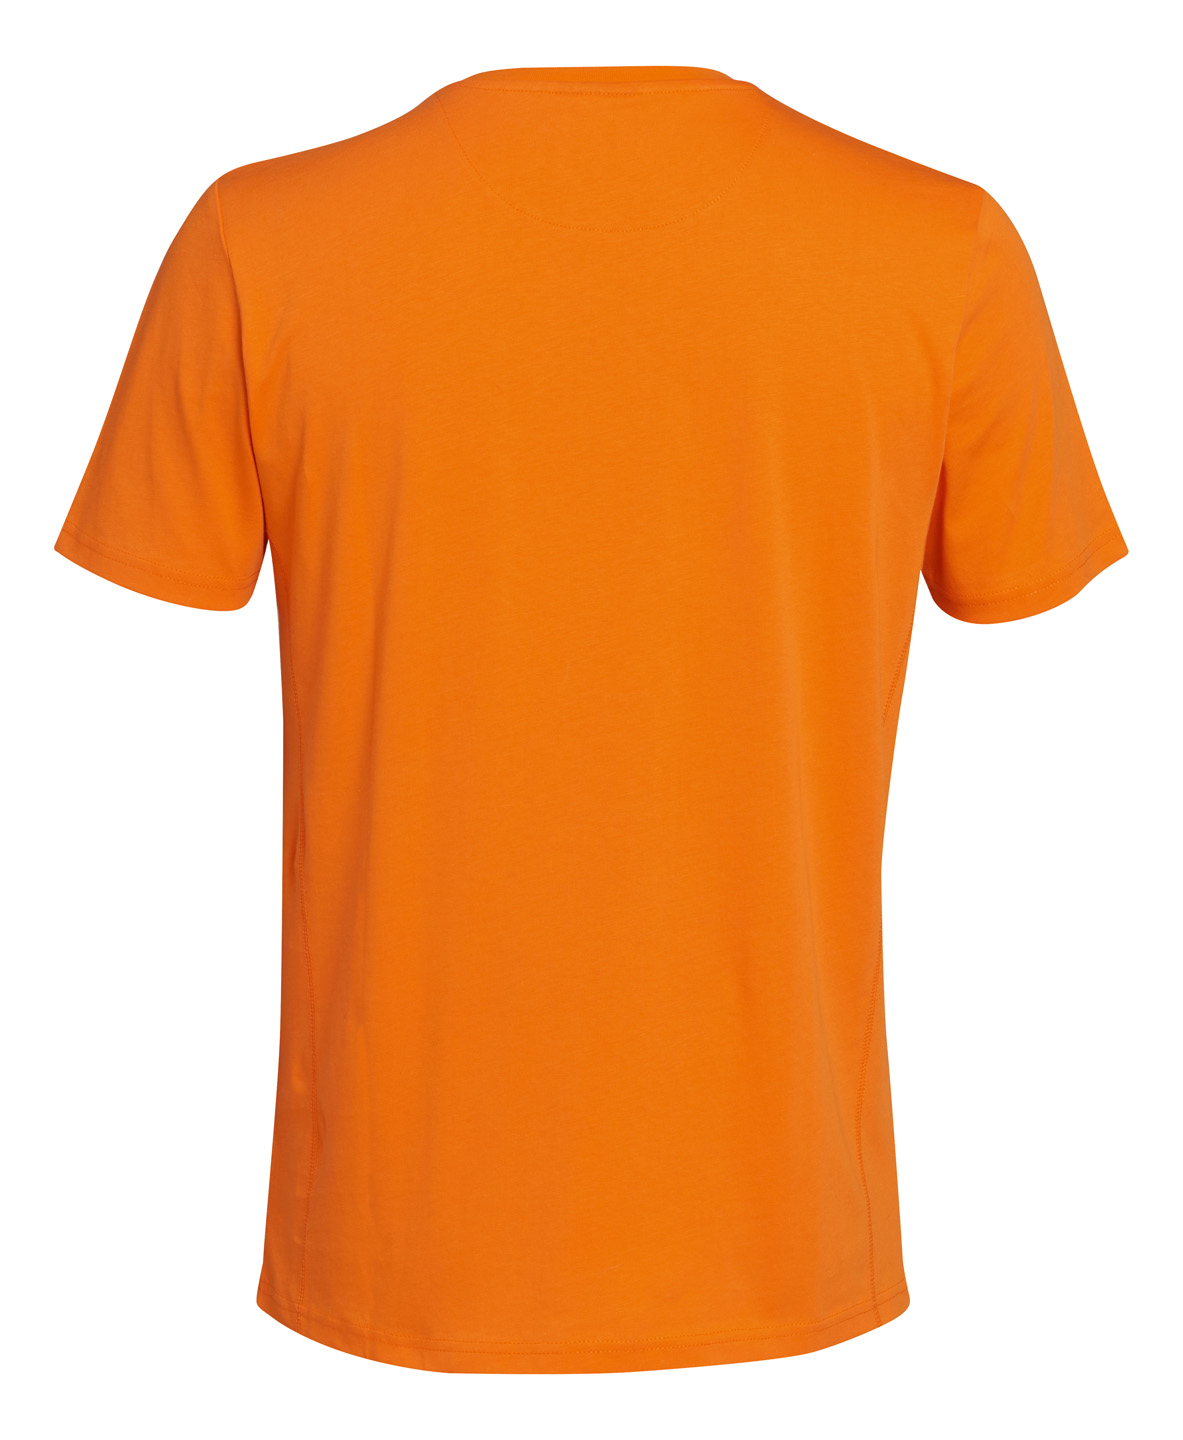 T-shirt LOGO CIRCLE oranje